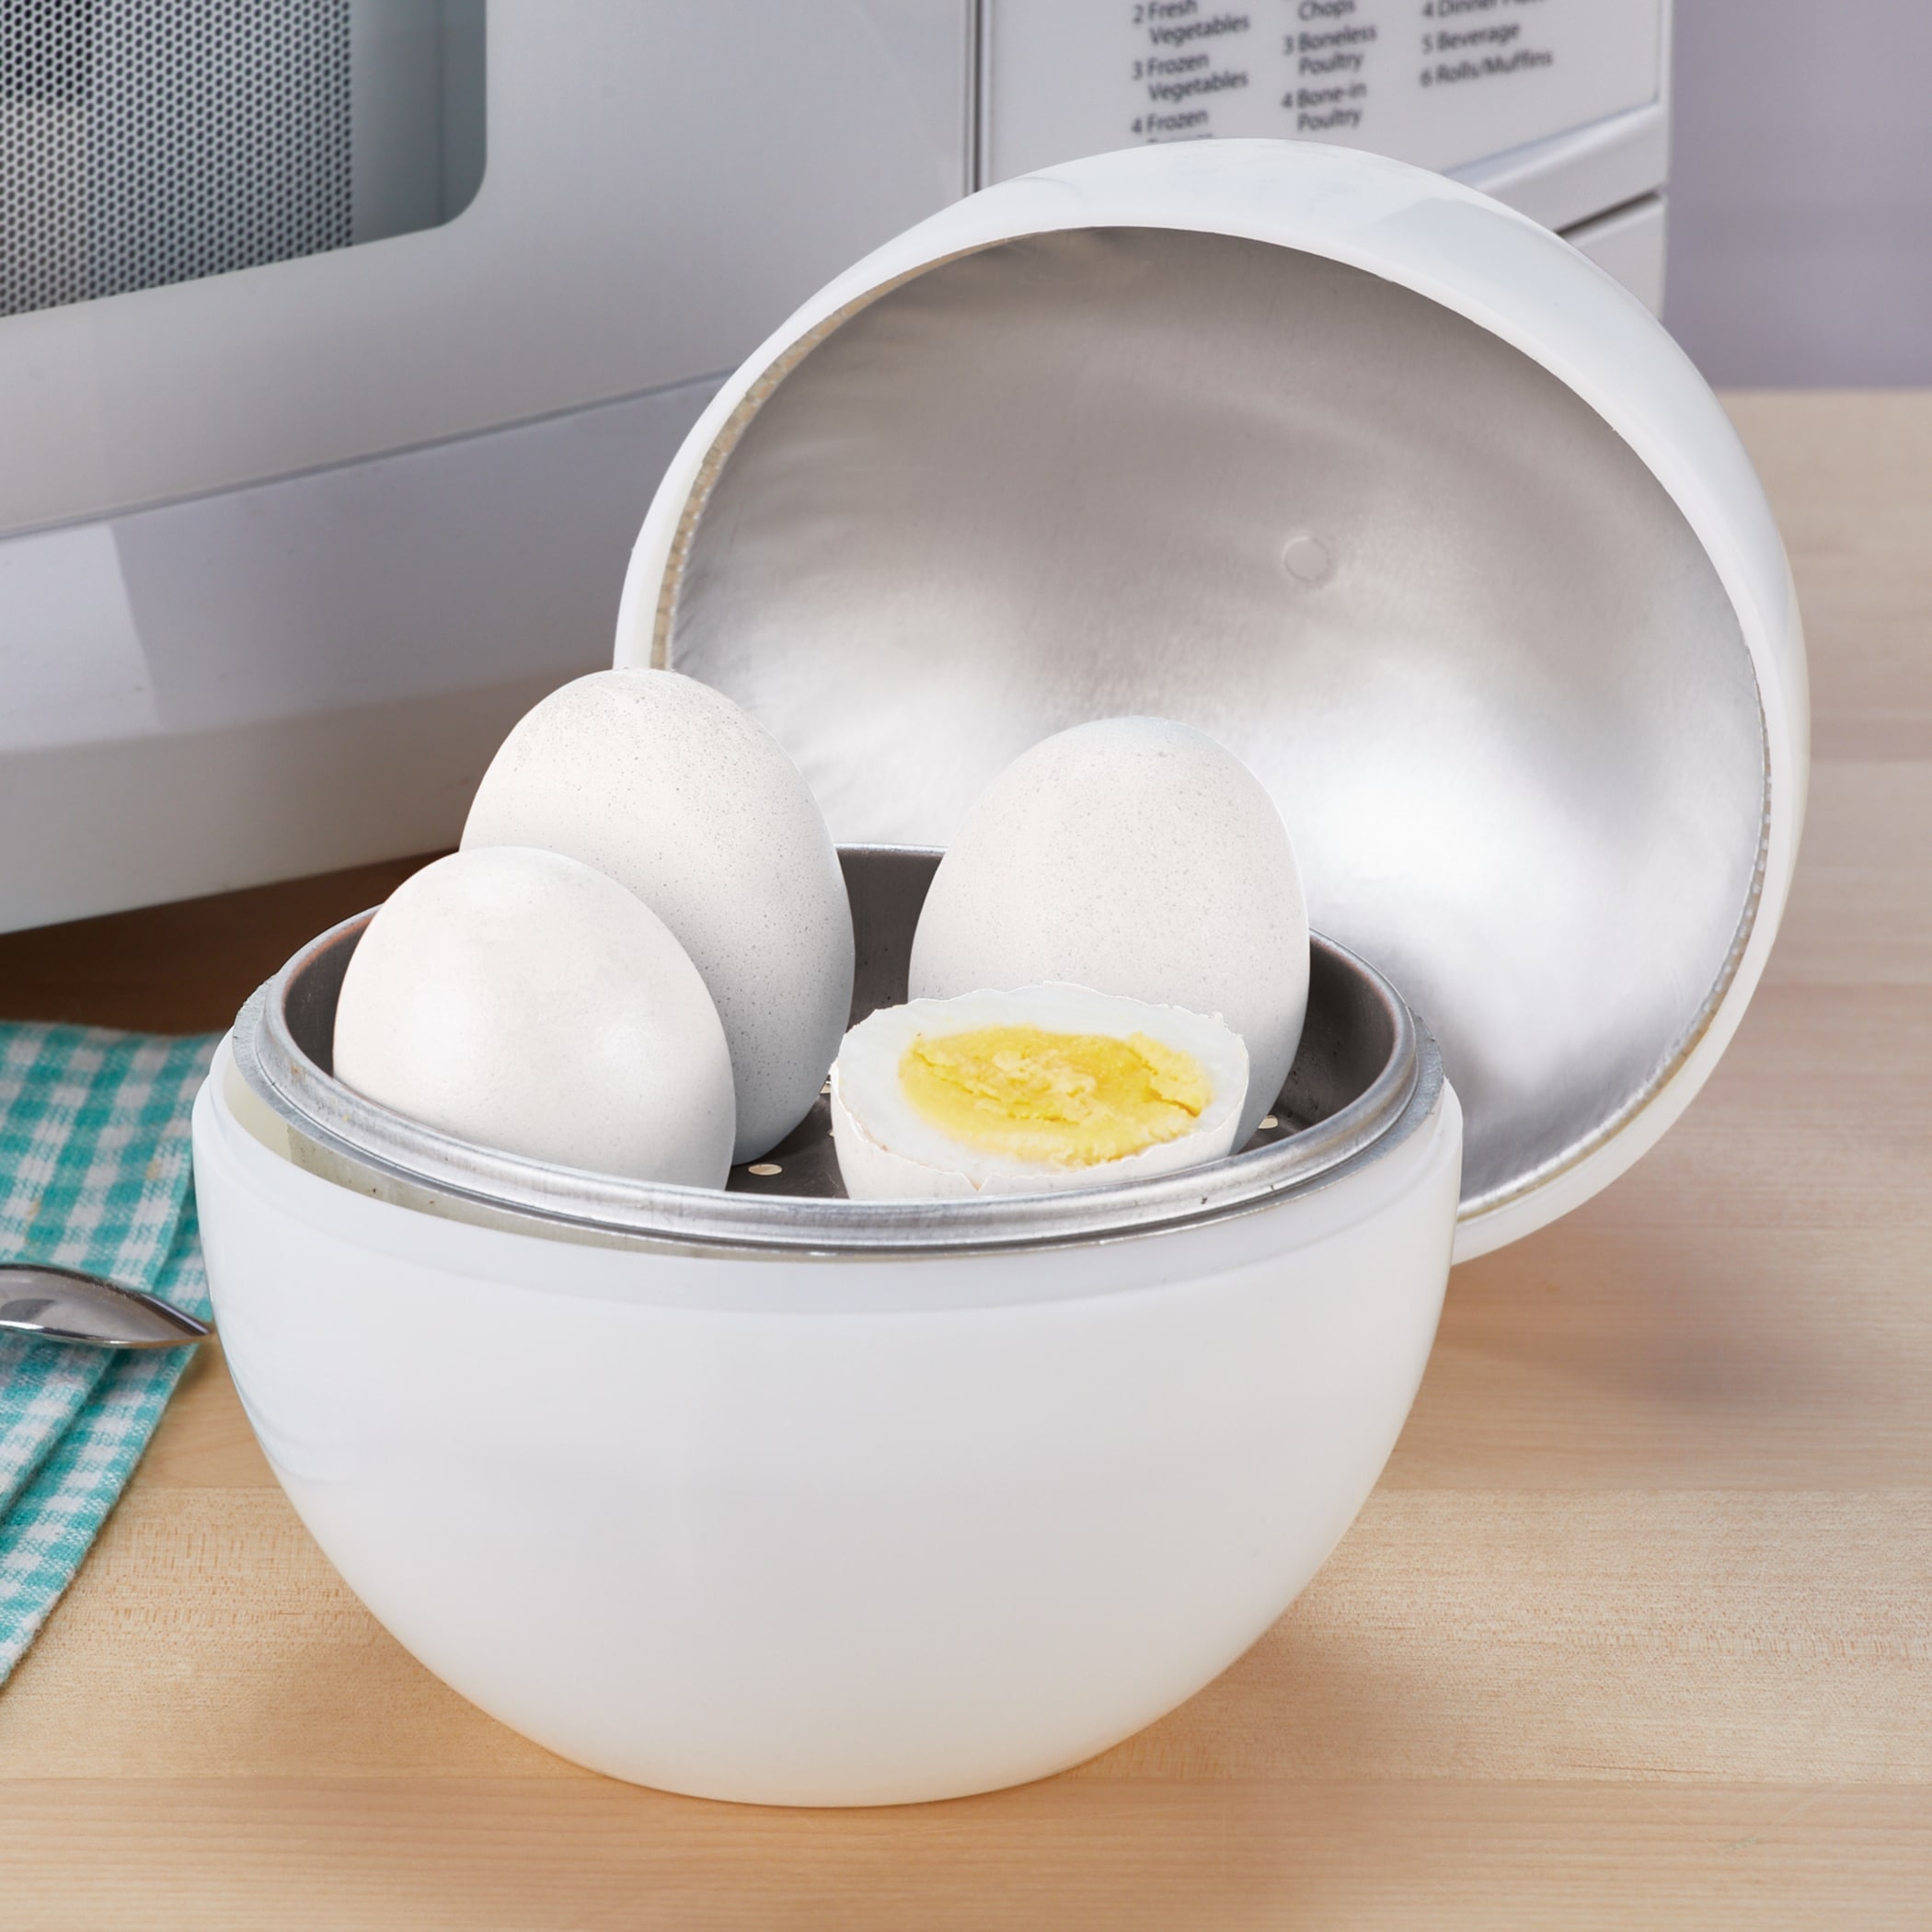 Microwave Egg Maker